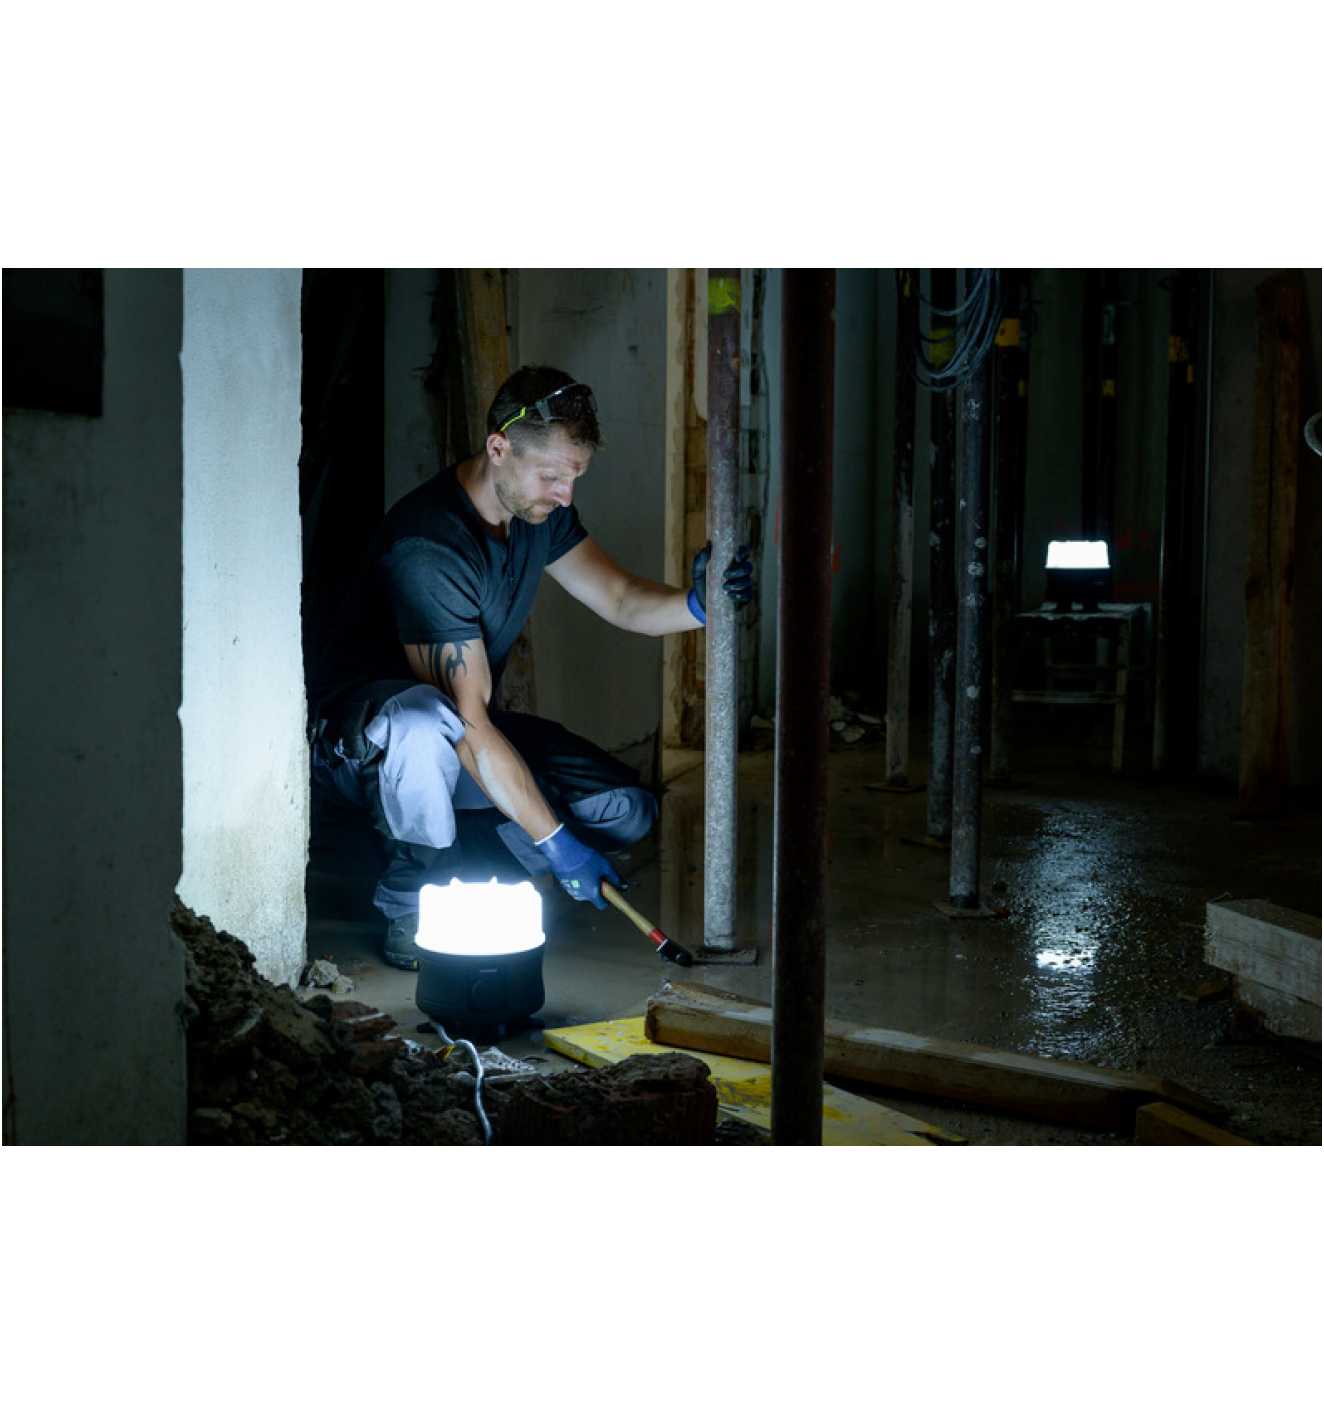 Leuchtdauer 12h, Akku, - Akku Baustrahler kaufen LED Mobiler online 360° Brennenstuhl Shop max. mit / Strahler Toolgroup IP54 Arbeitsleuchte 30W, Li-lon im LED 3000lm,